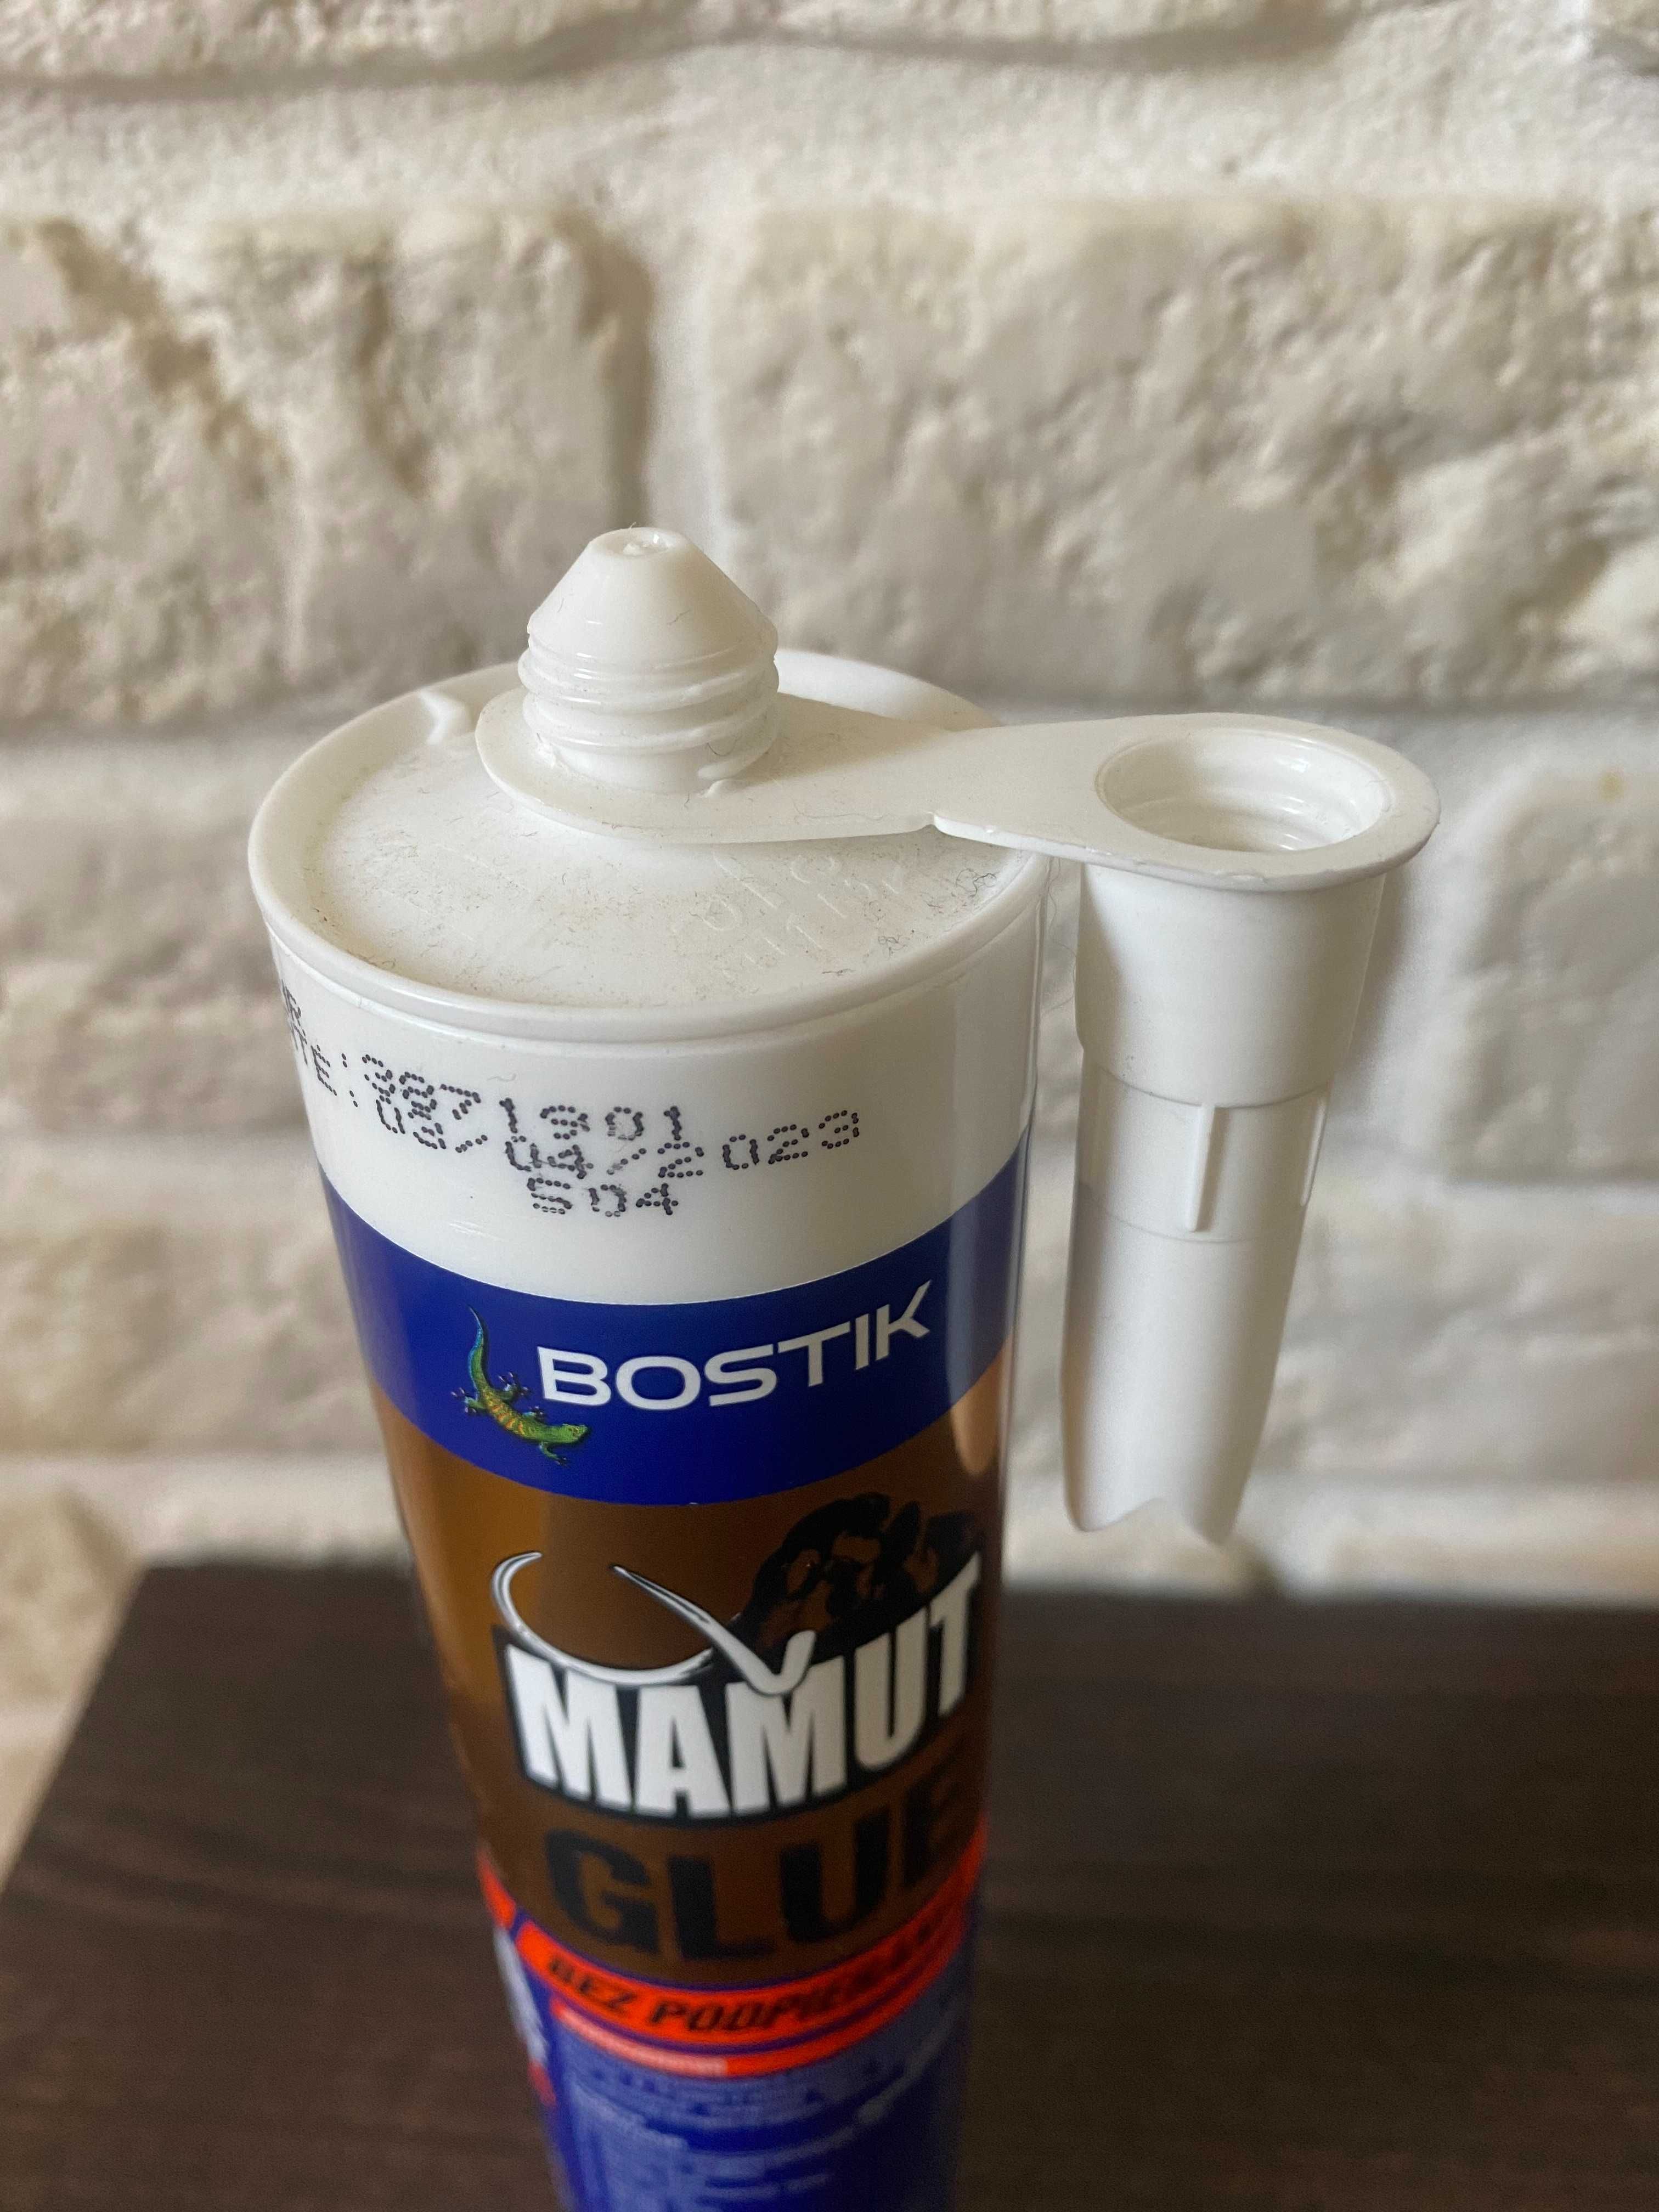 Klej Uniwersalny Montażowy MAMUT Glue BIAŁY 290 ml